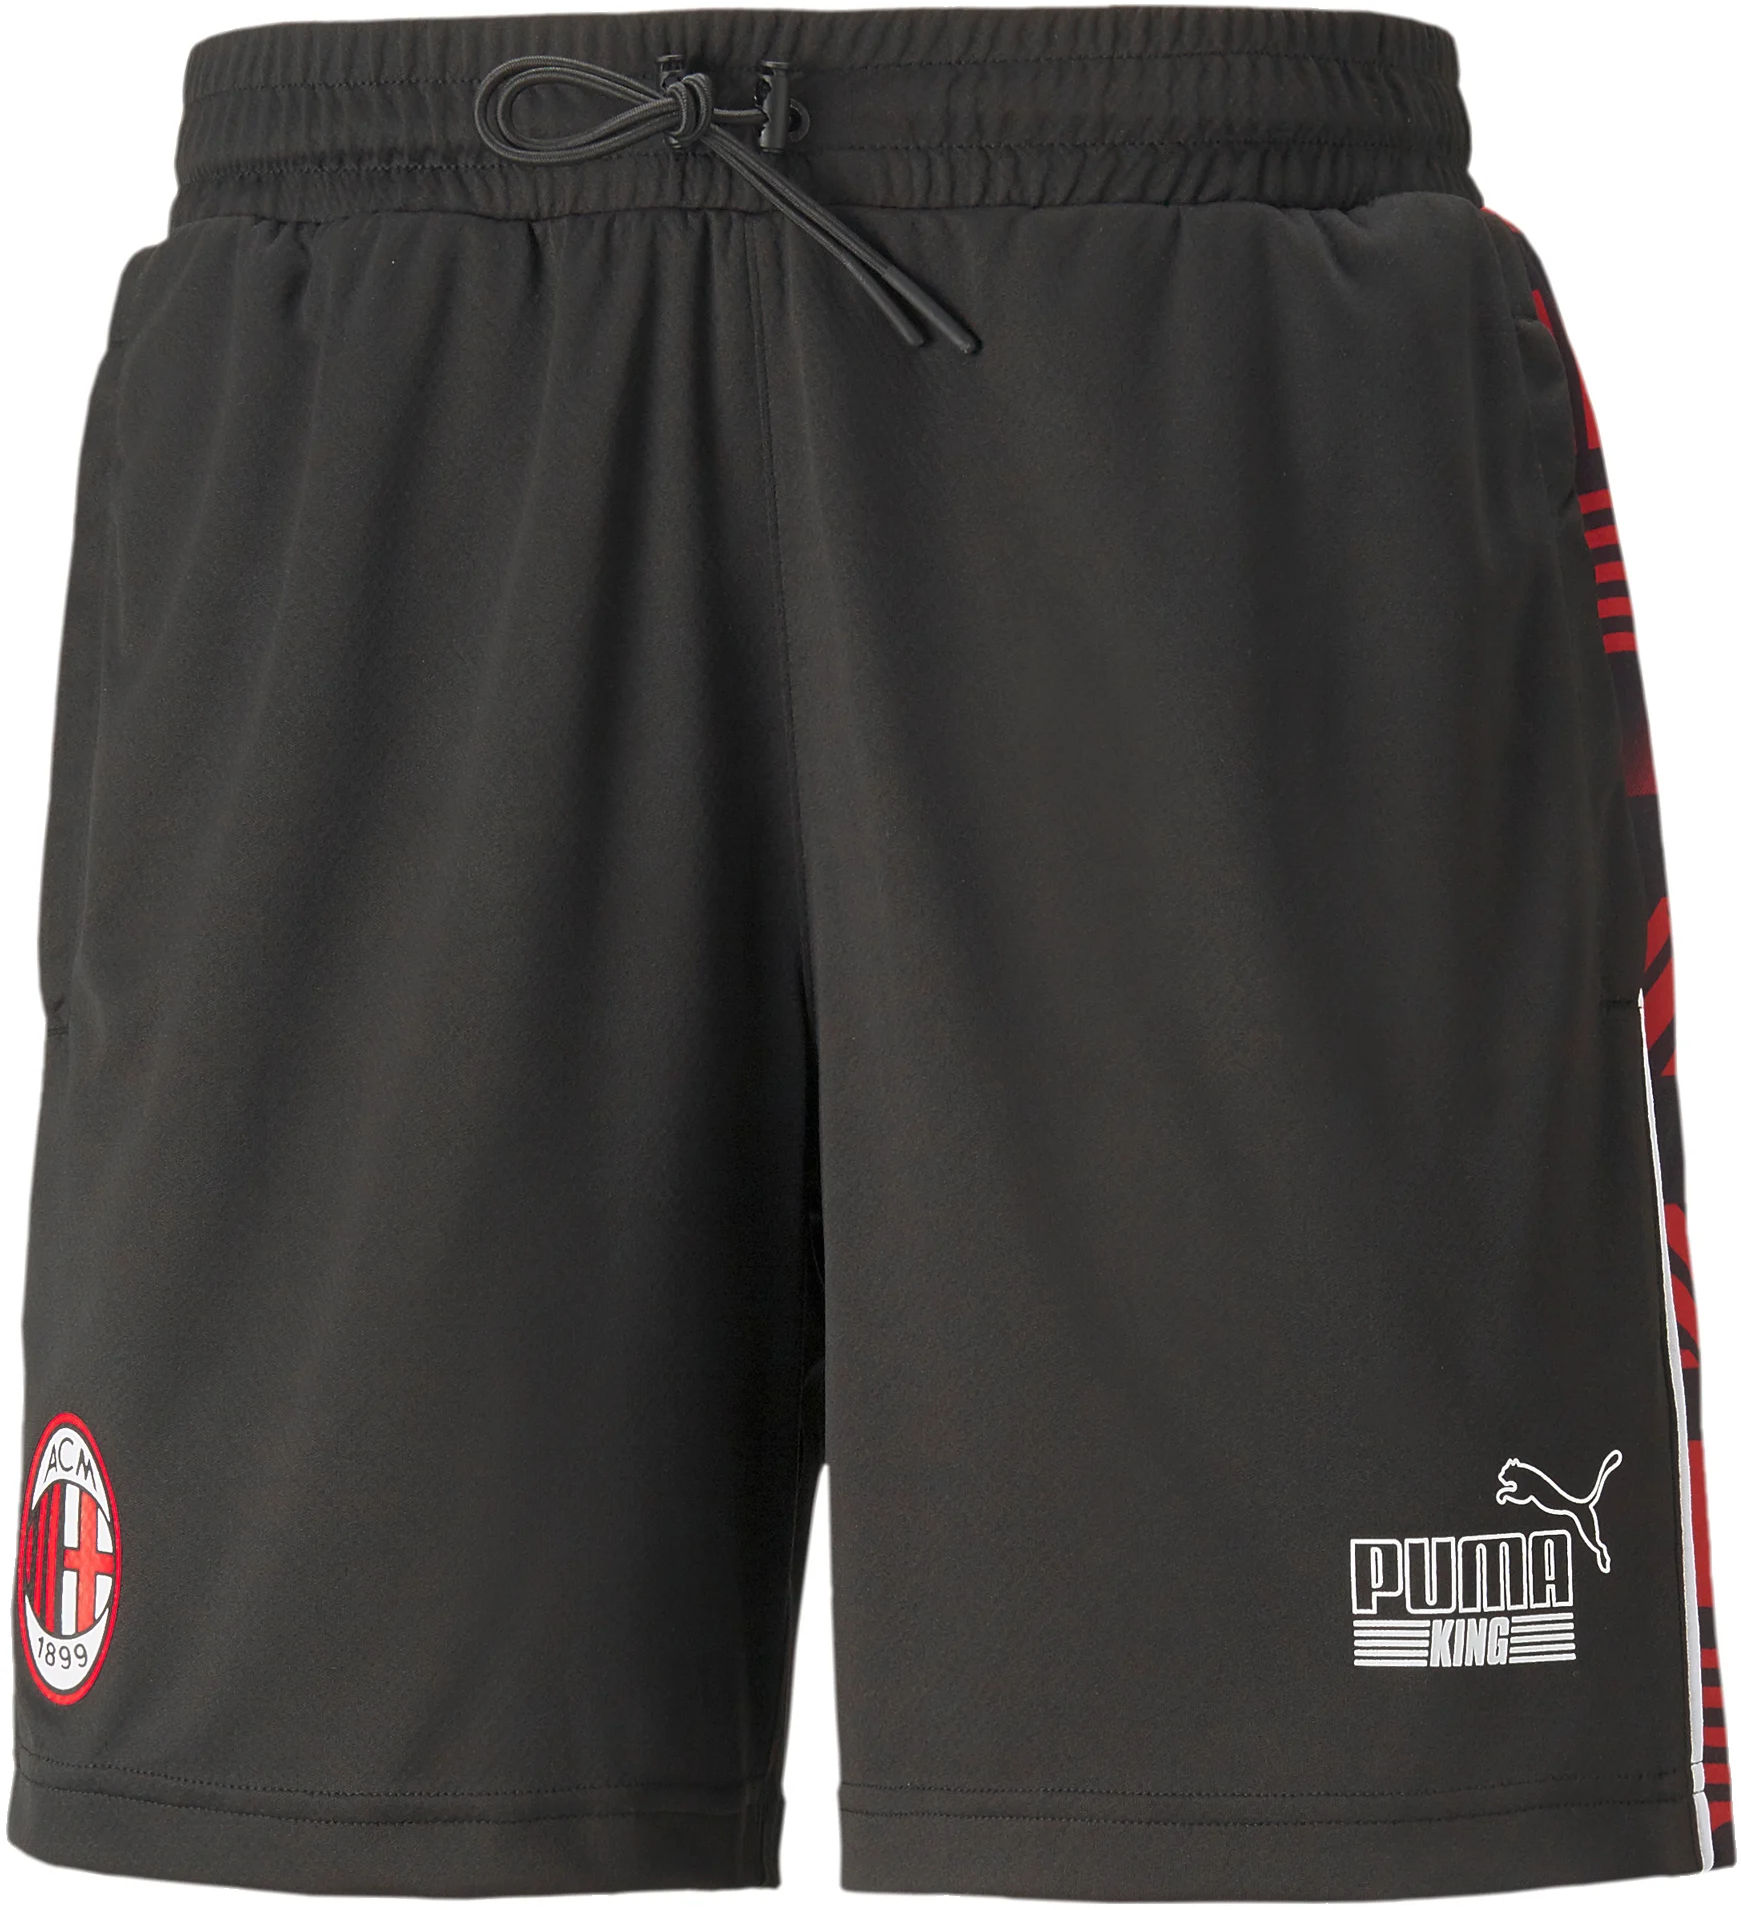 Calções Puma AC Milan FtblHeritage Men's Shorts